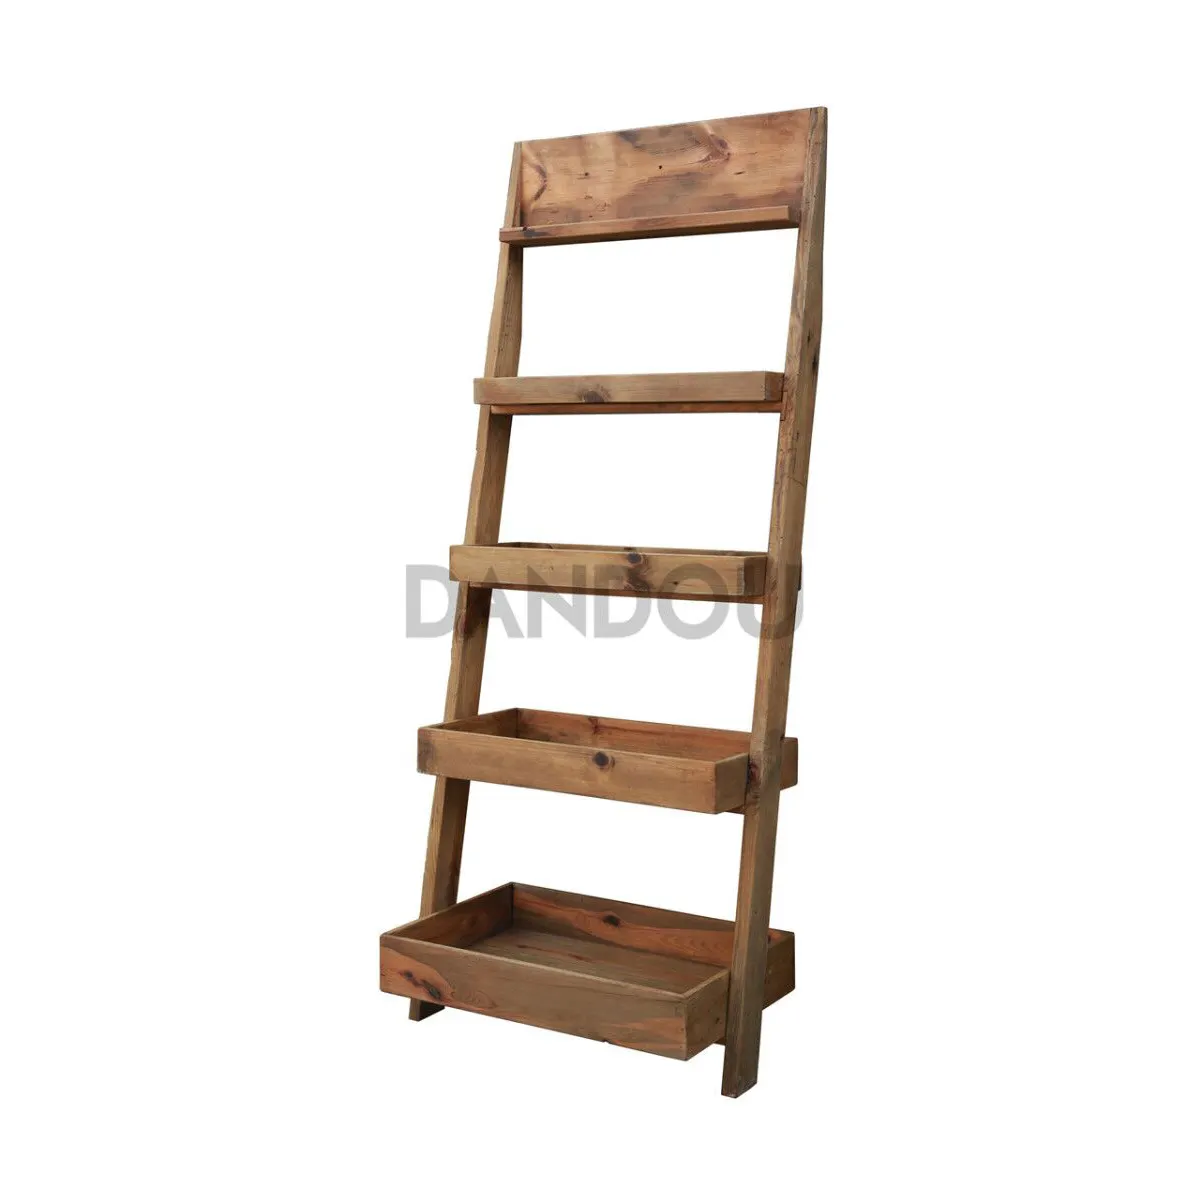 Estantería Industrial de madera reciclada para muebles de sala de estar, estante de libros con escalera inclinada estrecha, para el hogar